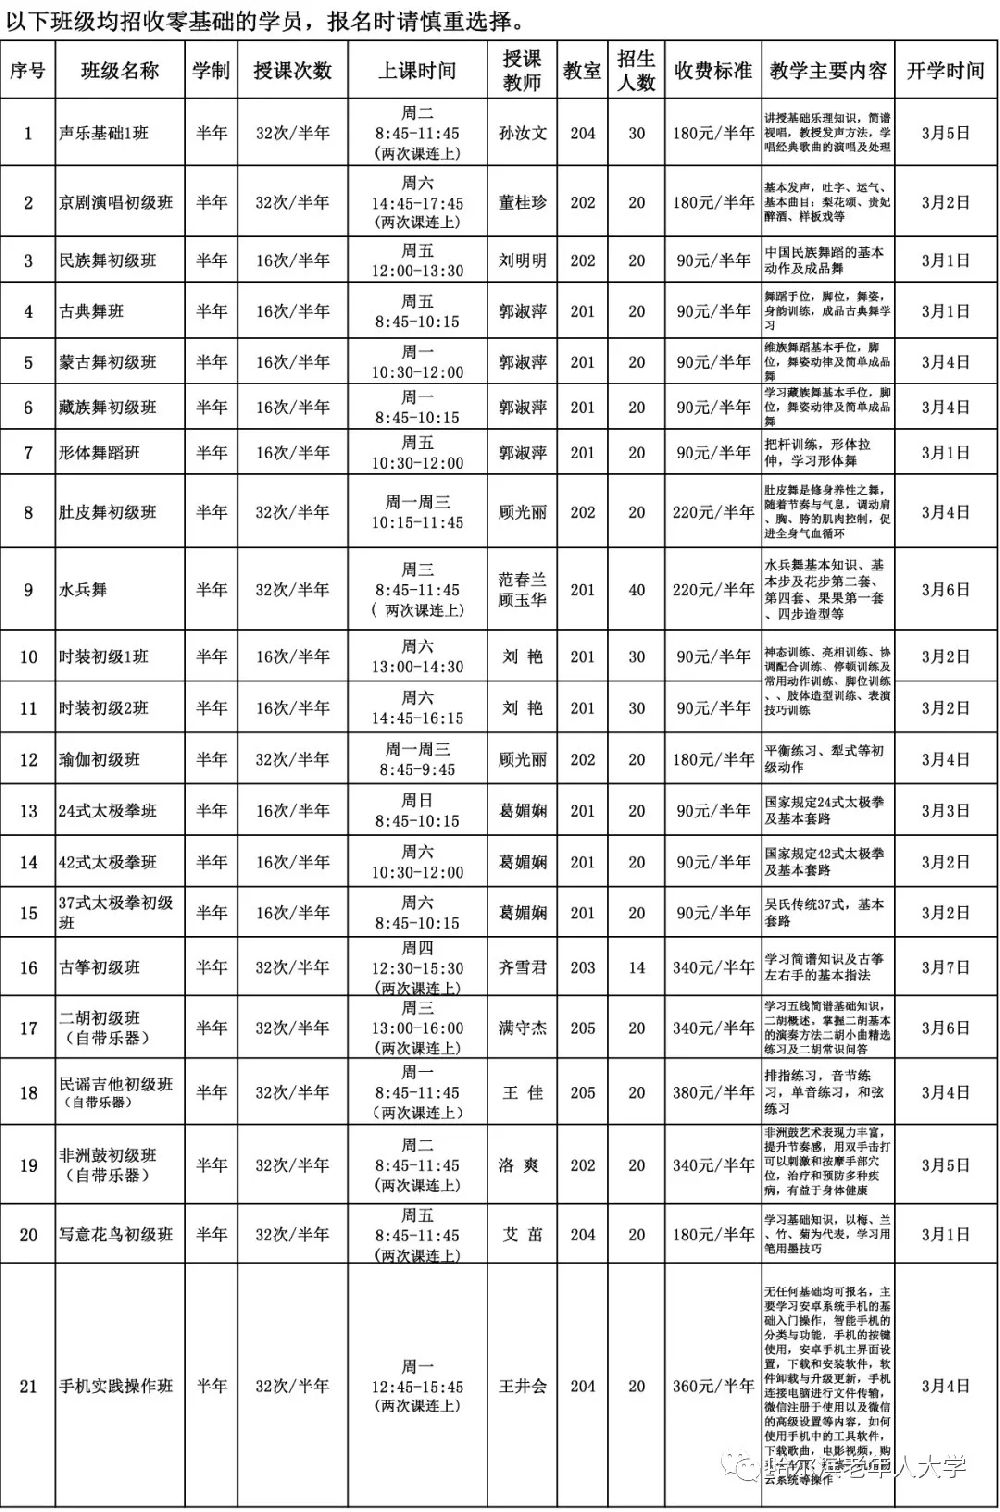 2019哈尔滨老年人大学分校区专业课程表、学费